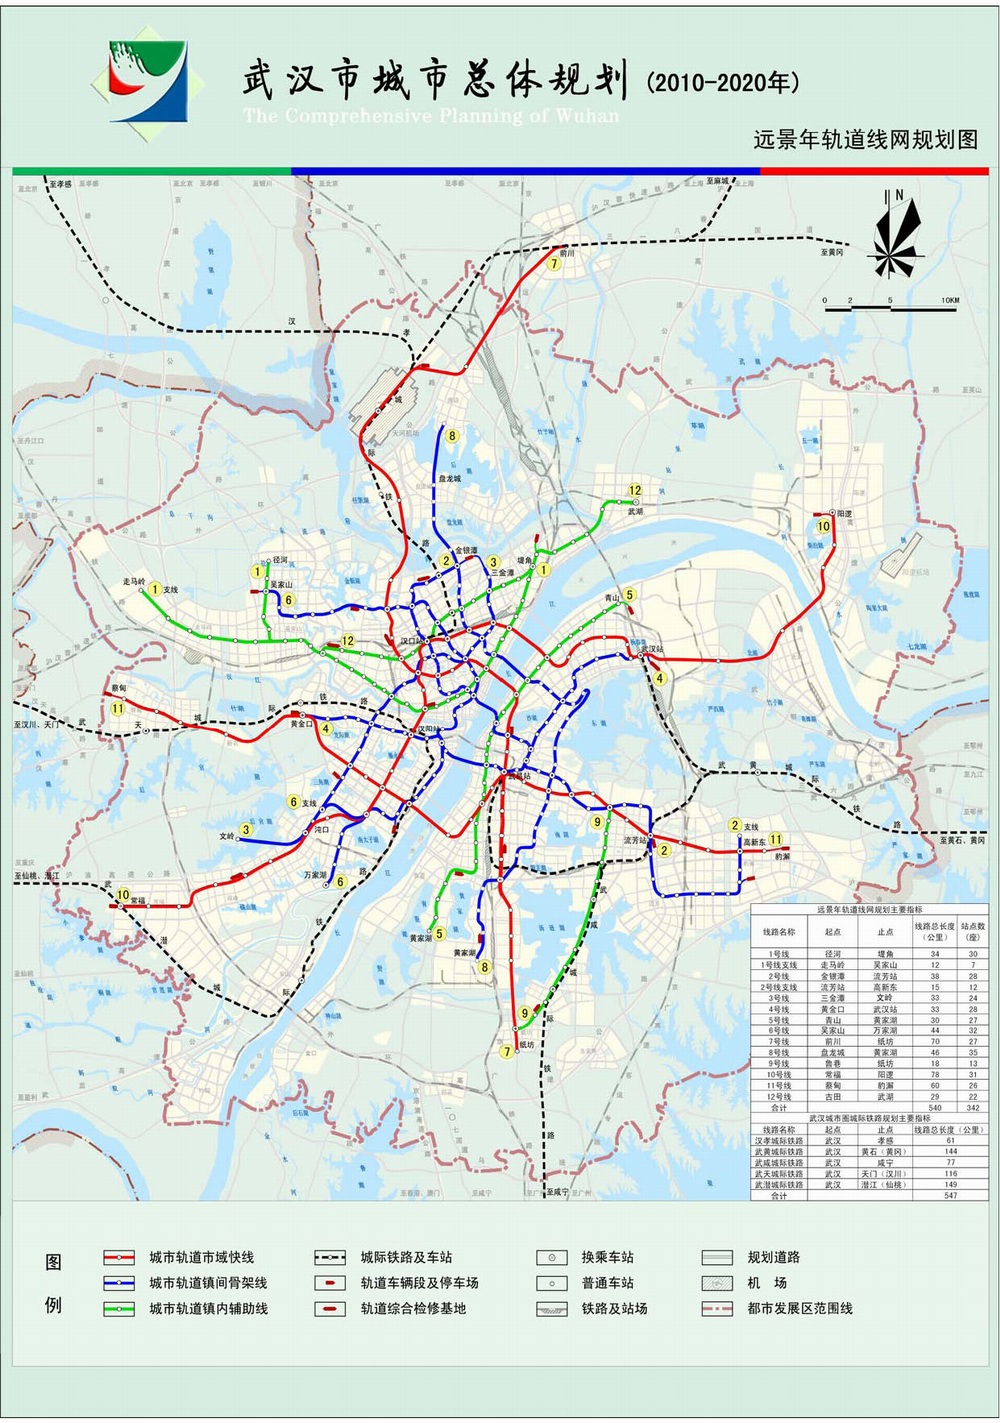 远景年轨道线网规划图